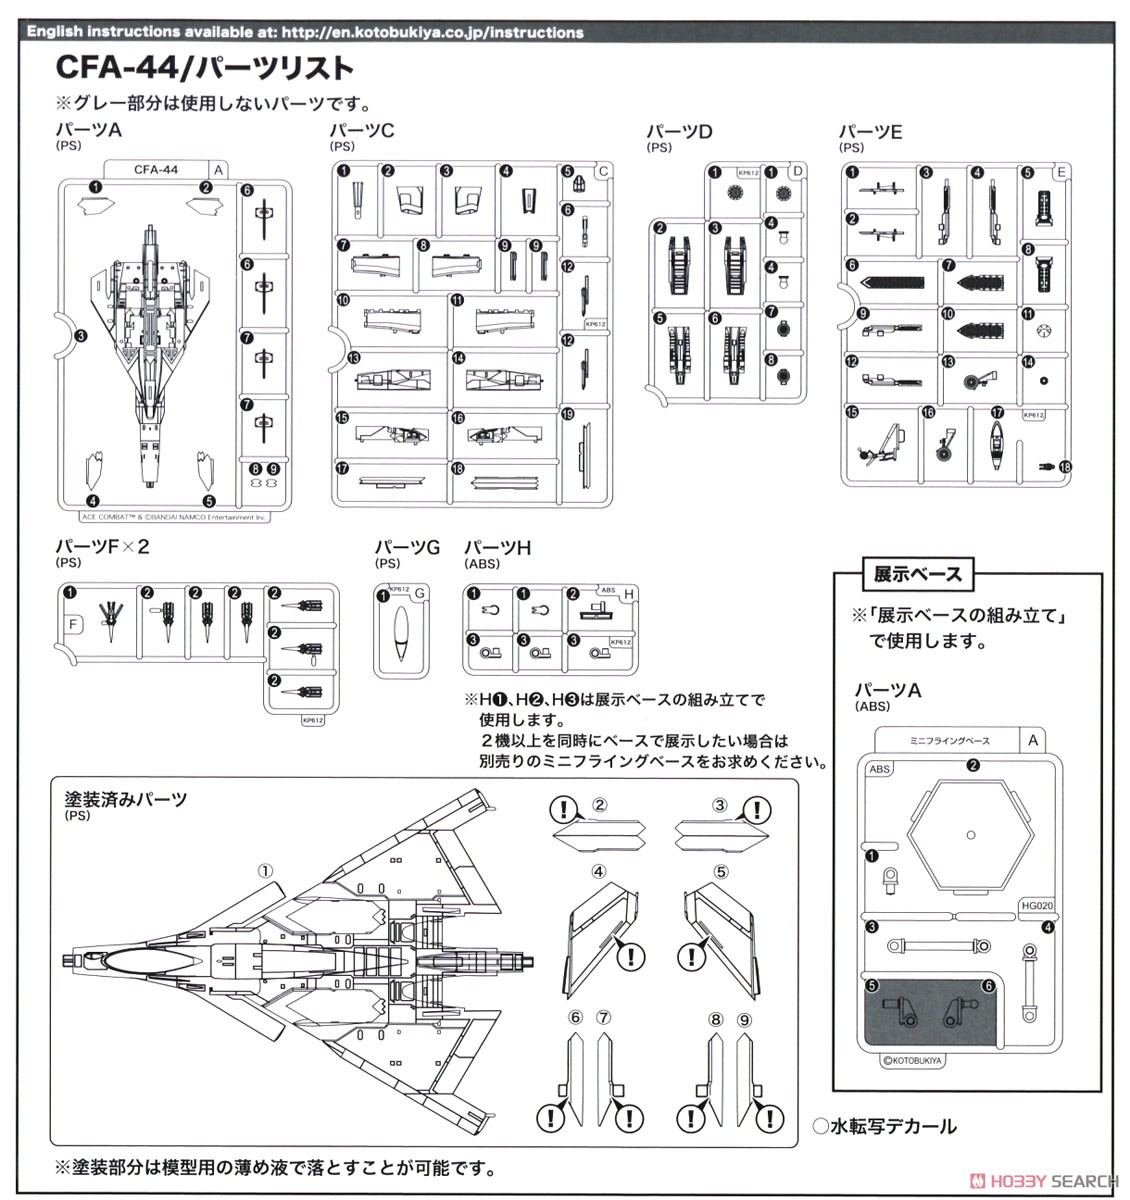 CFA-44 (プラモデル) 設計図7